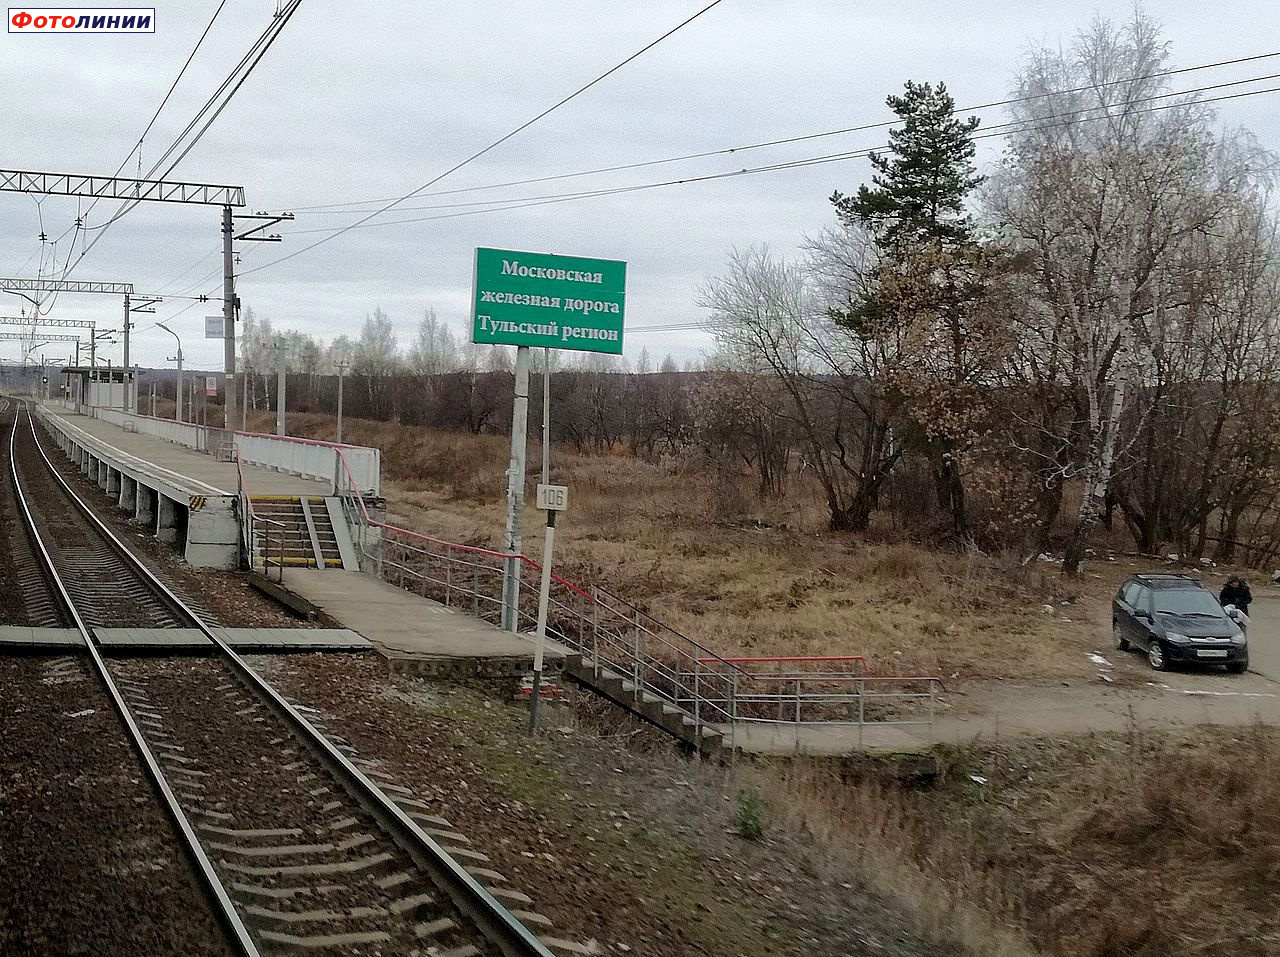 Первая платформа, граница Московско-Курской и Тульской дистанций пути, вид в нечётном направлении